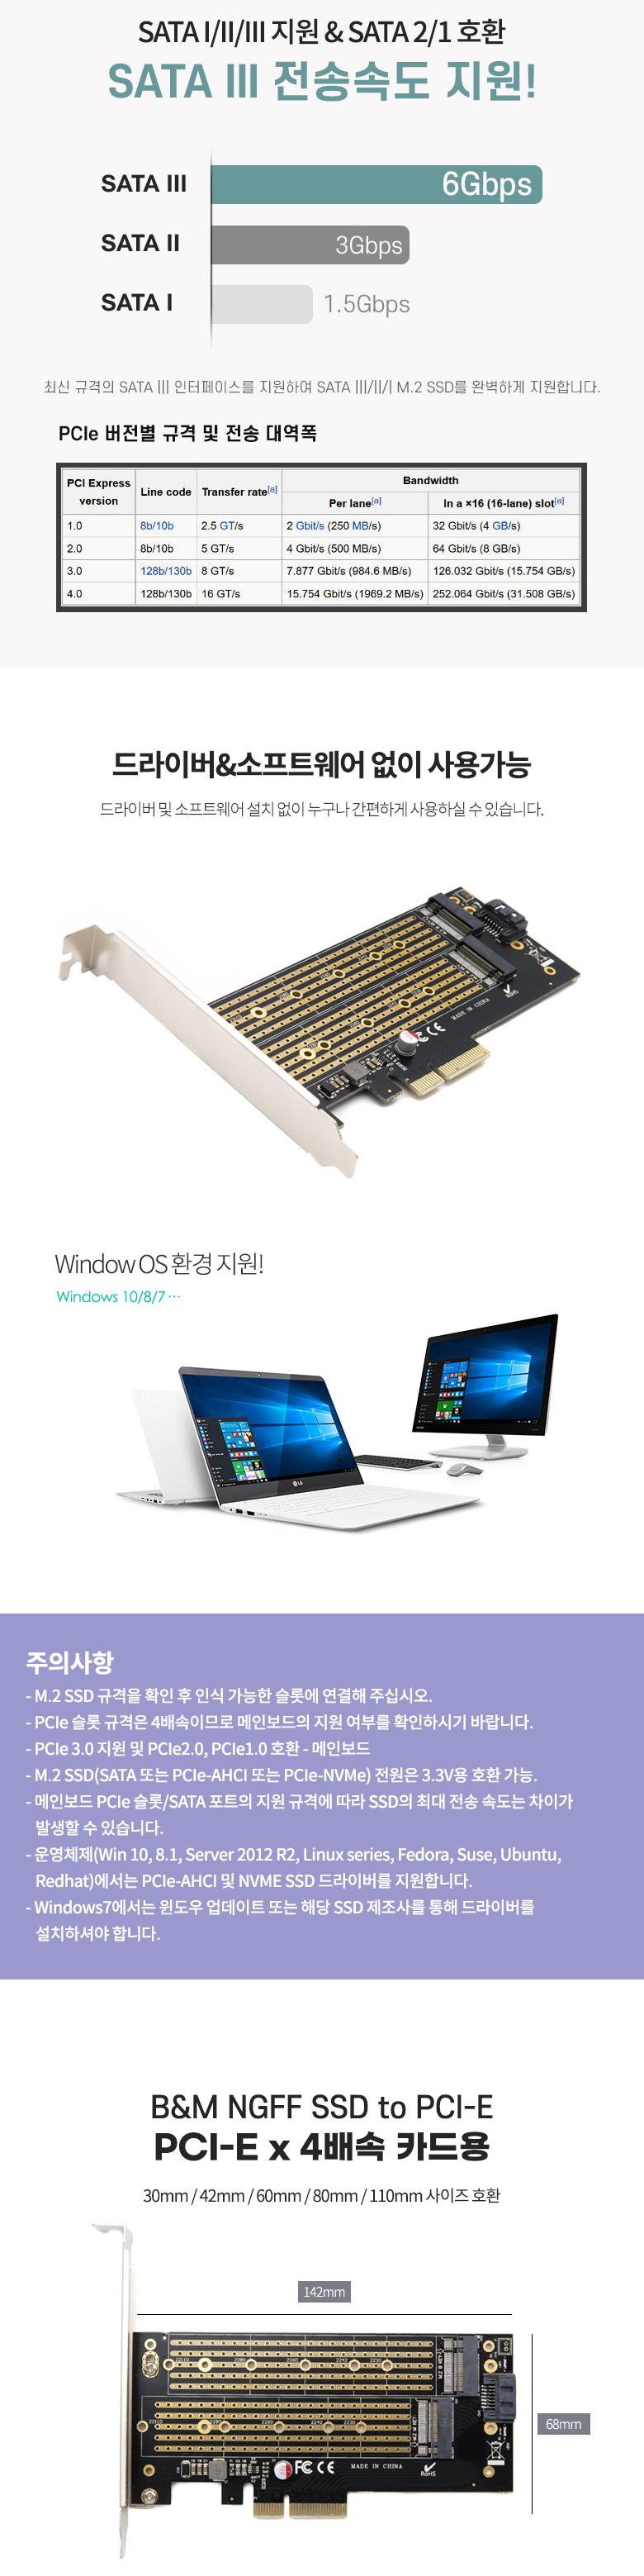 Coms PCI Express ȯ  M.2 NGFF NVME SSD Key BM to PCI-E 4x + SATA 7P PC  Ʈũ Ʈũ SATAī SATAȯī  SATA Ÿȯī Ÿ SSDī庯ȯ 2ƮSATA